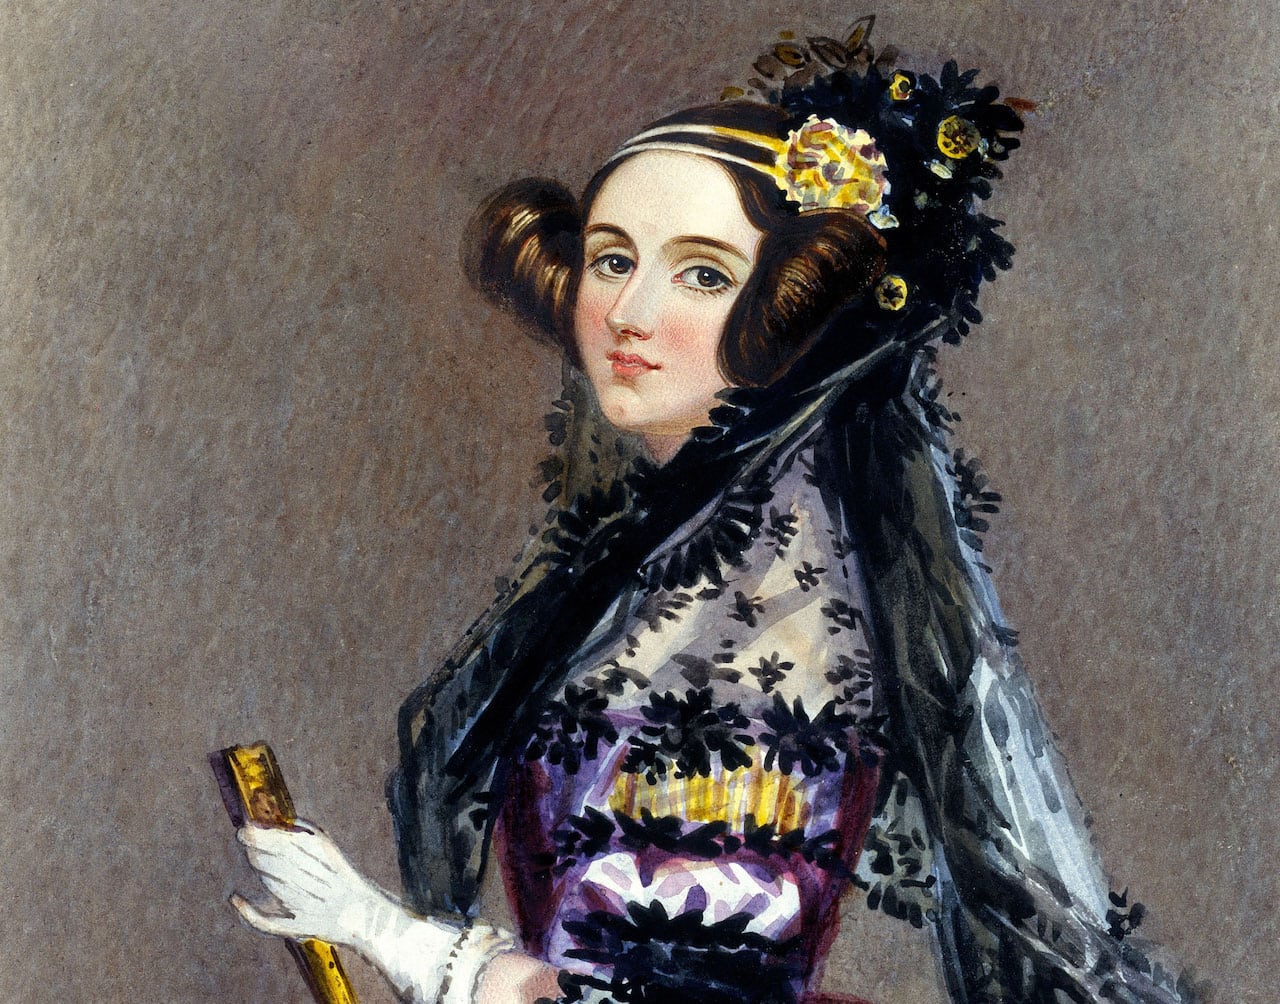 ¿Quién dijo que las matemáticas eran cosa de hombres? Ada Lovelace (1815-1852) fue una escritora y científica británica considerada como la primera programadora de ordenadores, ya que desarrolló el primer algoritmo destinado a ser procesado por una máquina. Su trabajo es esencial para la historia de la informática y la computación